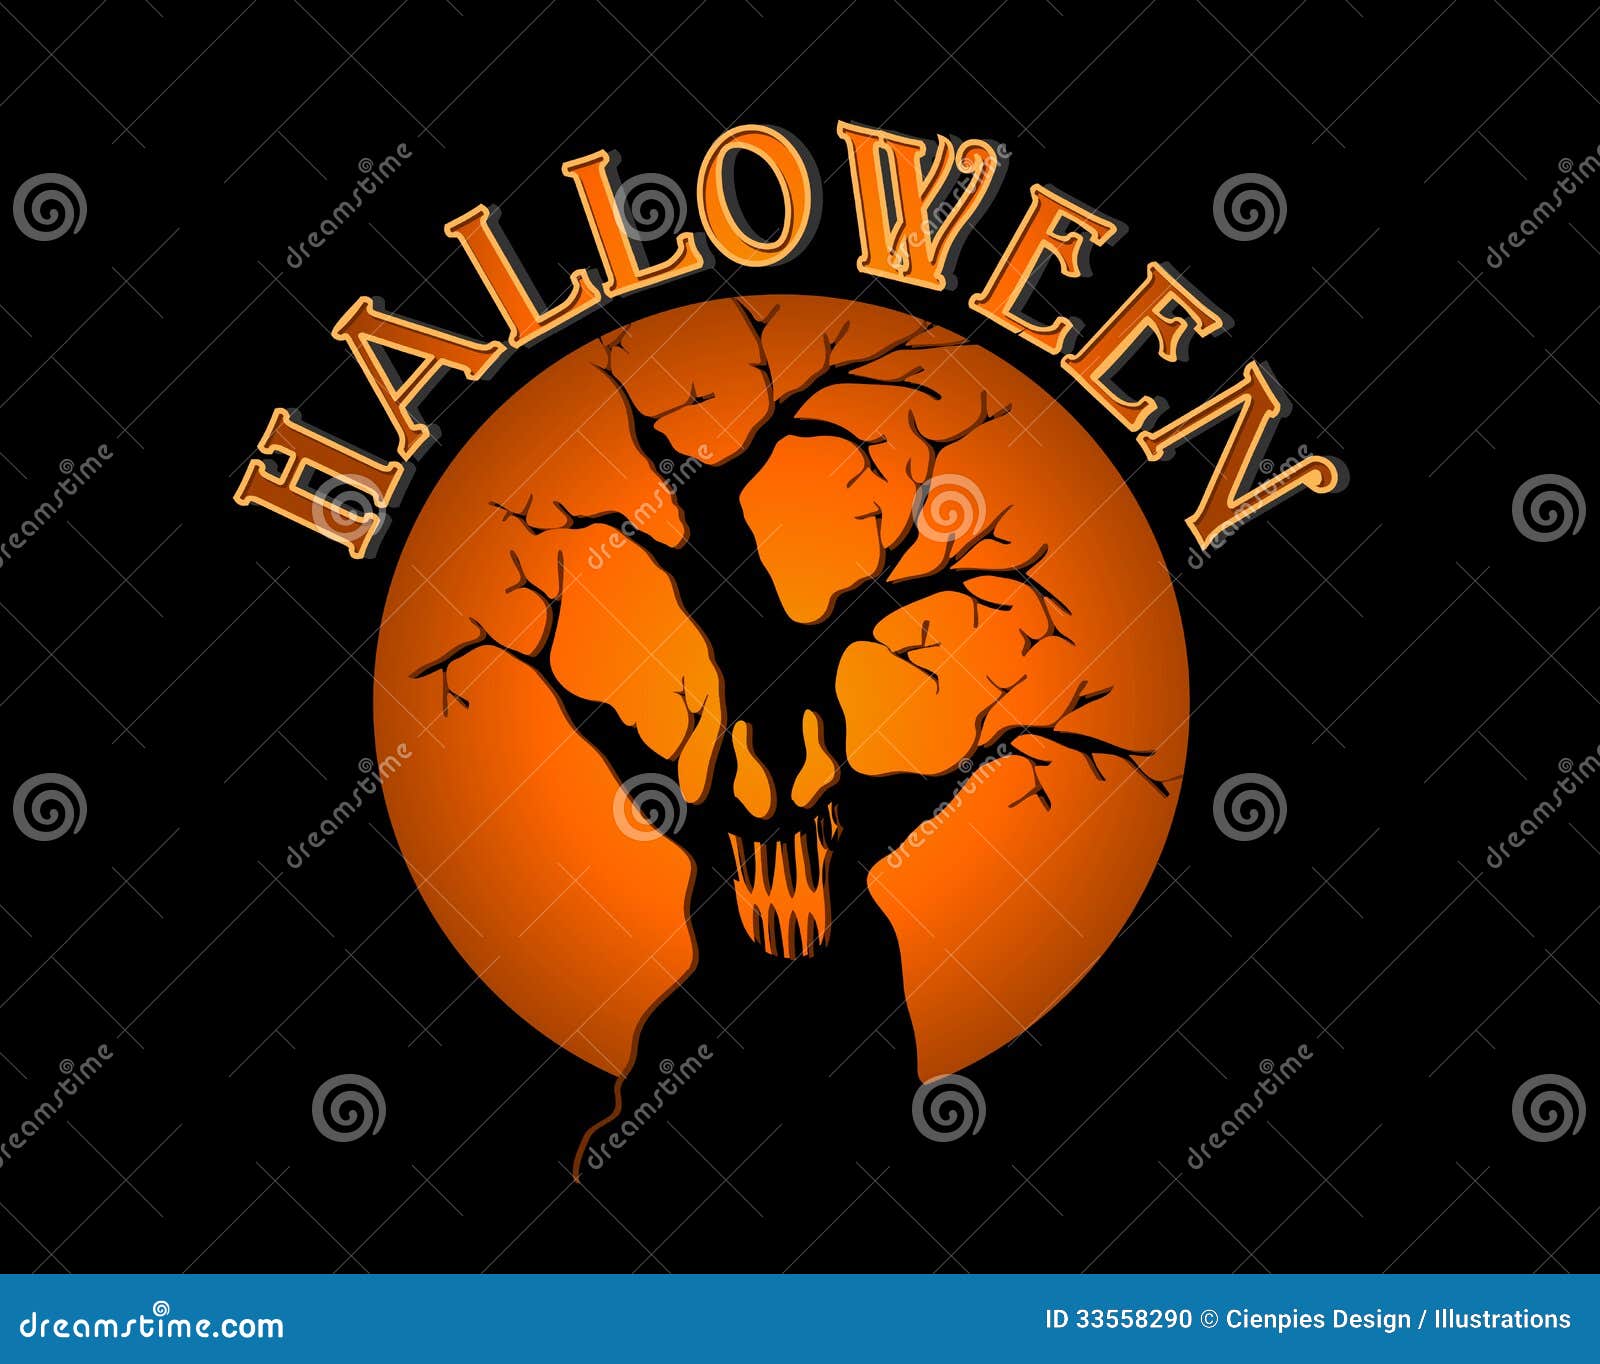 50 modelos de PowerPoint de Halloween para tocar na temporada assustadora